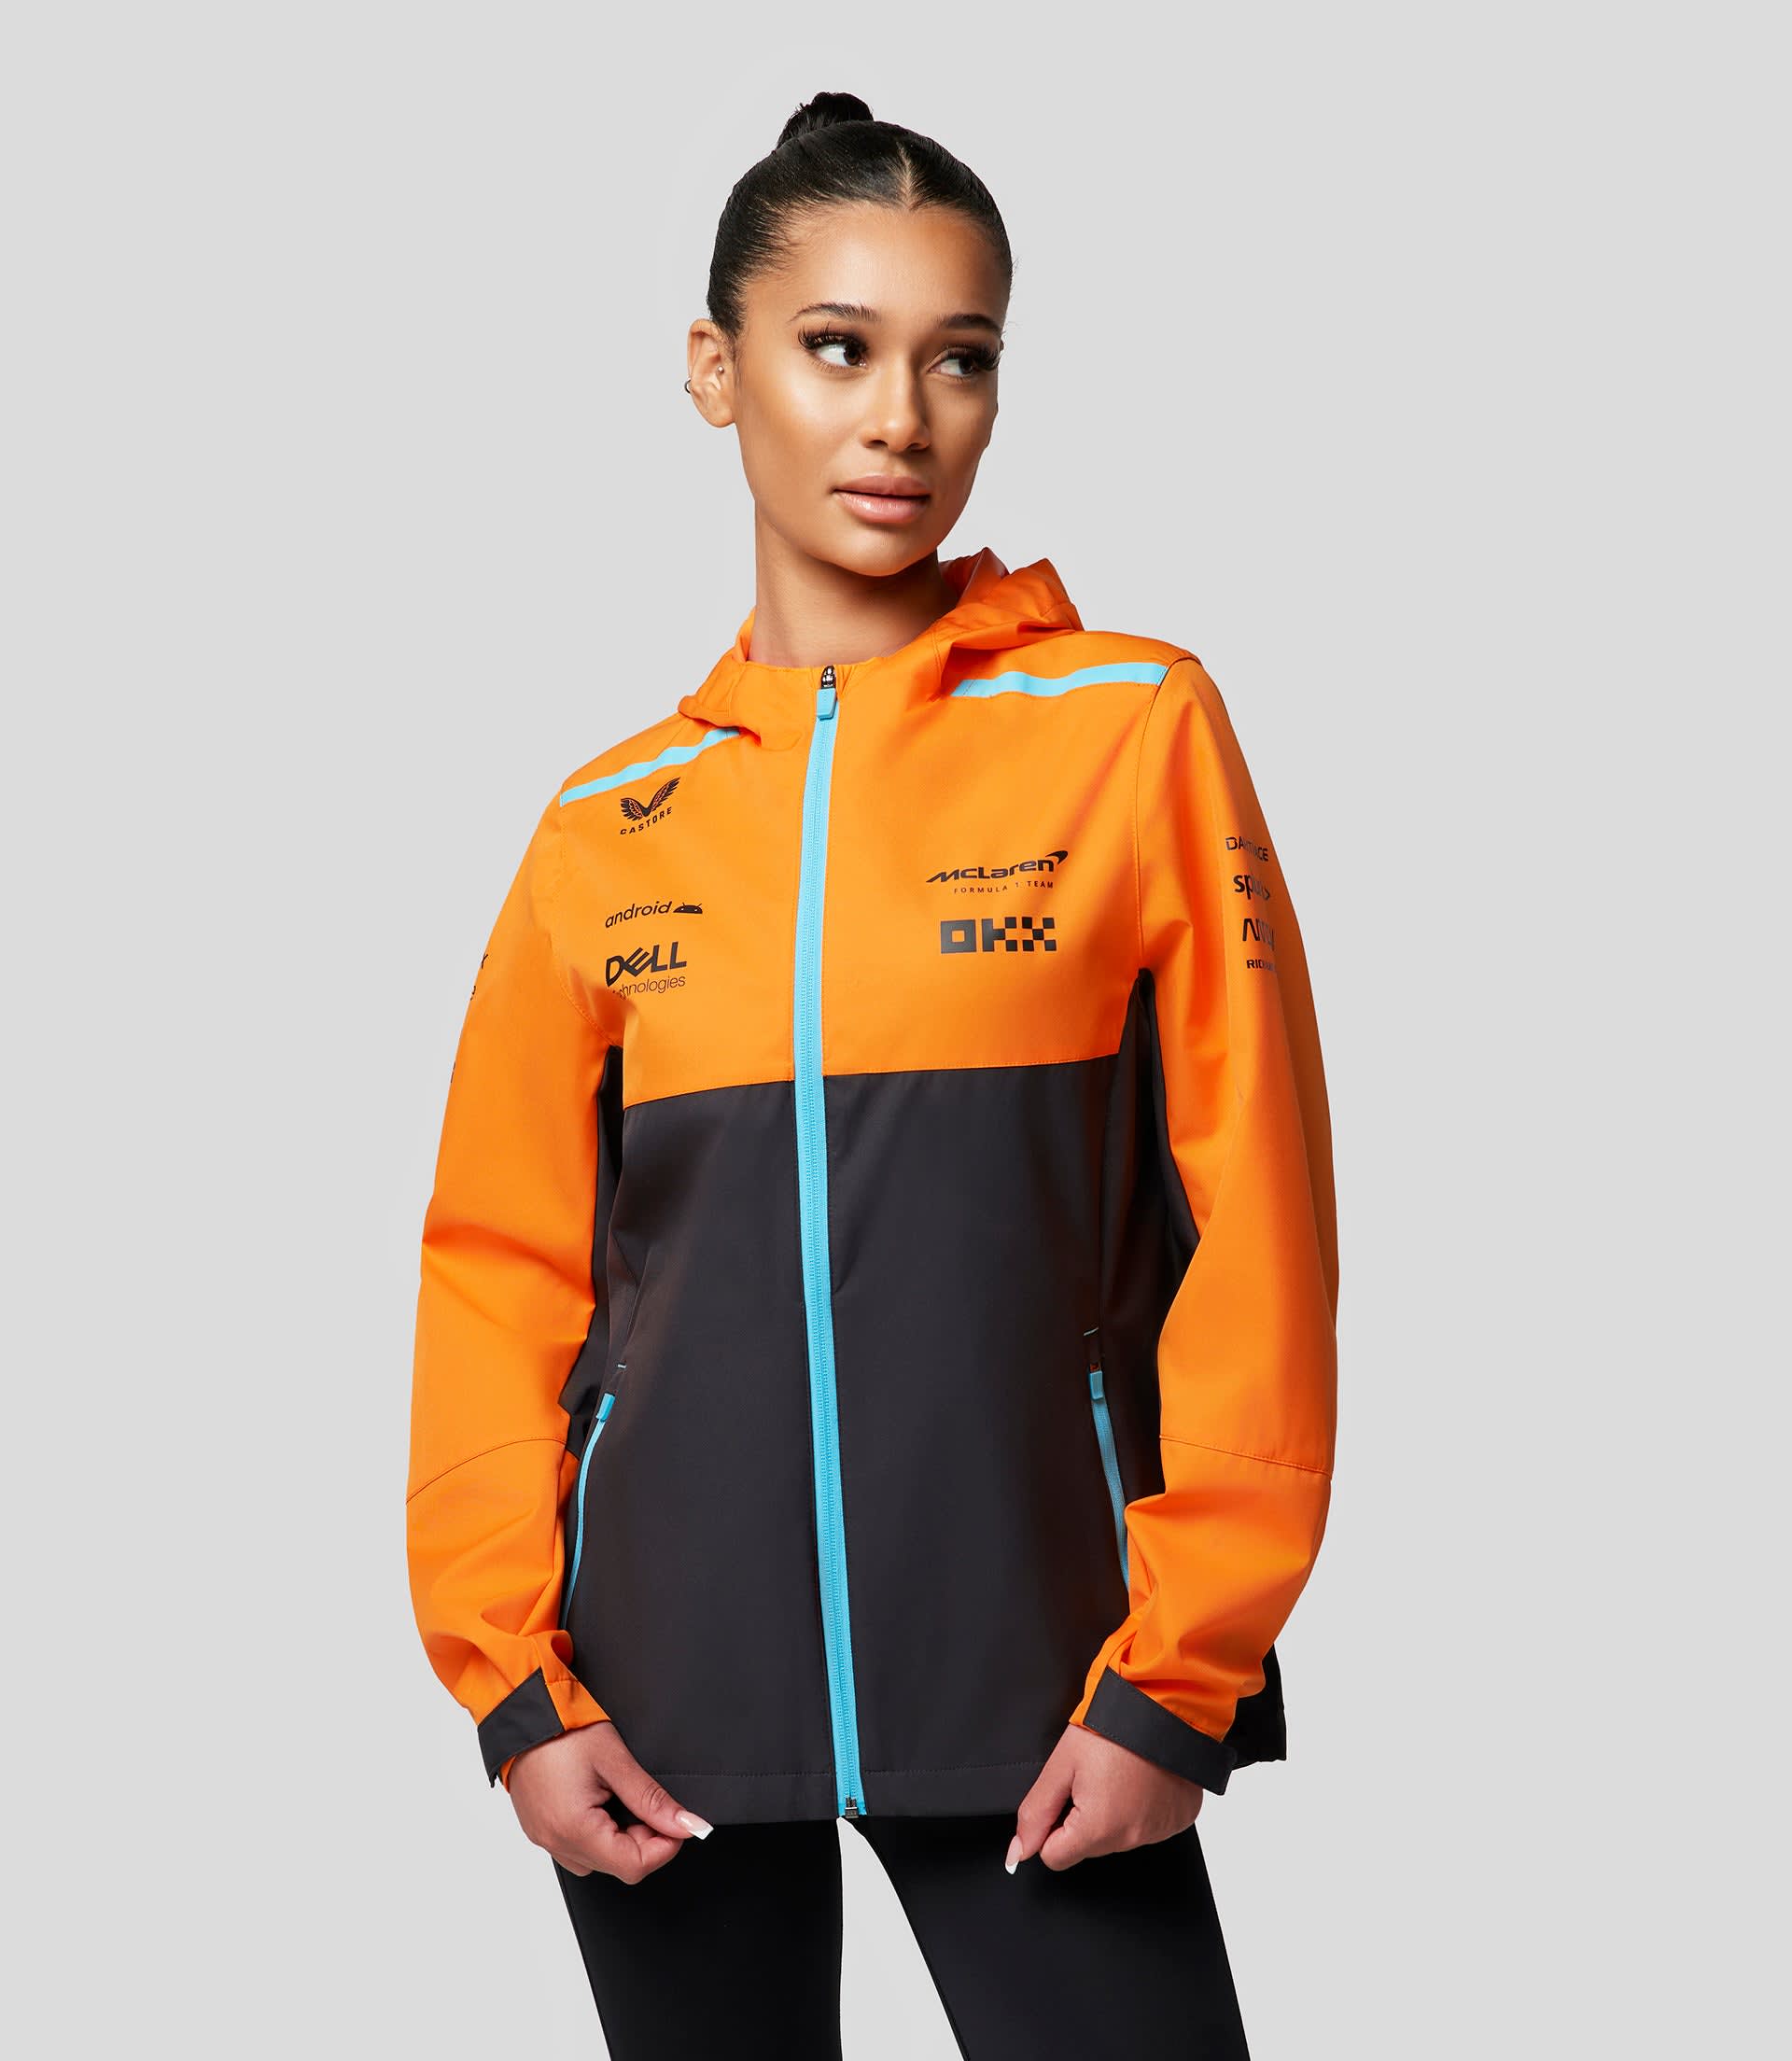 McLaren F1Team Hoodie – The Grid Clothing